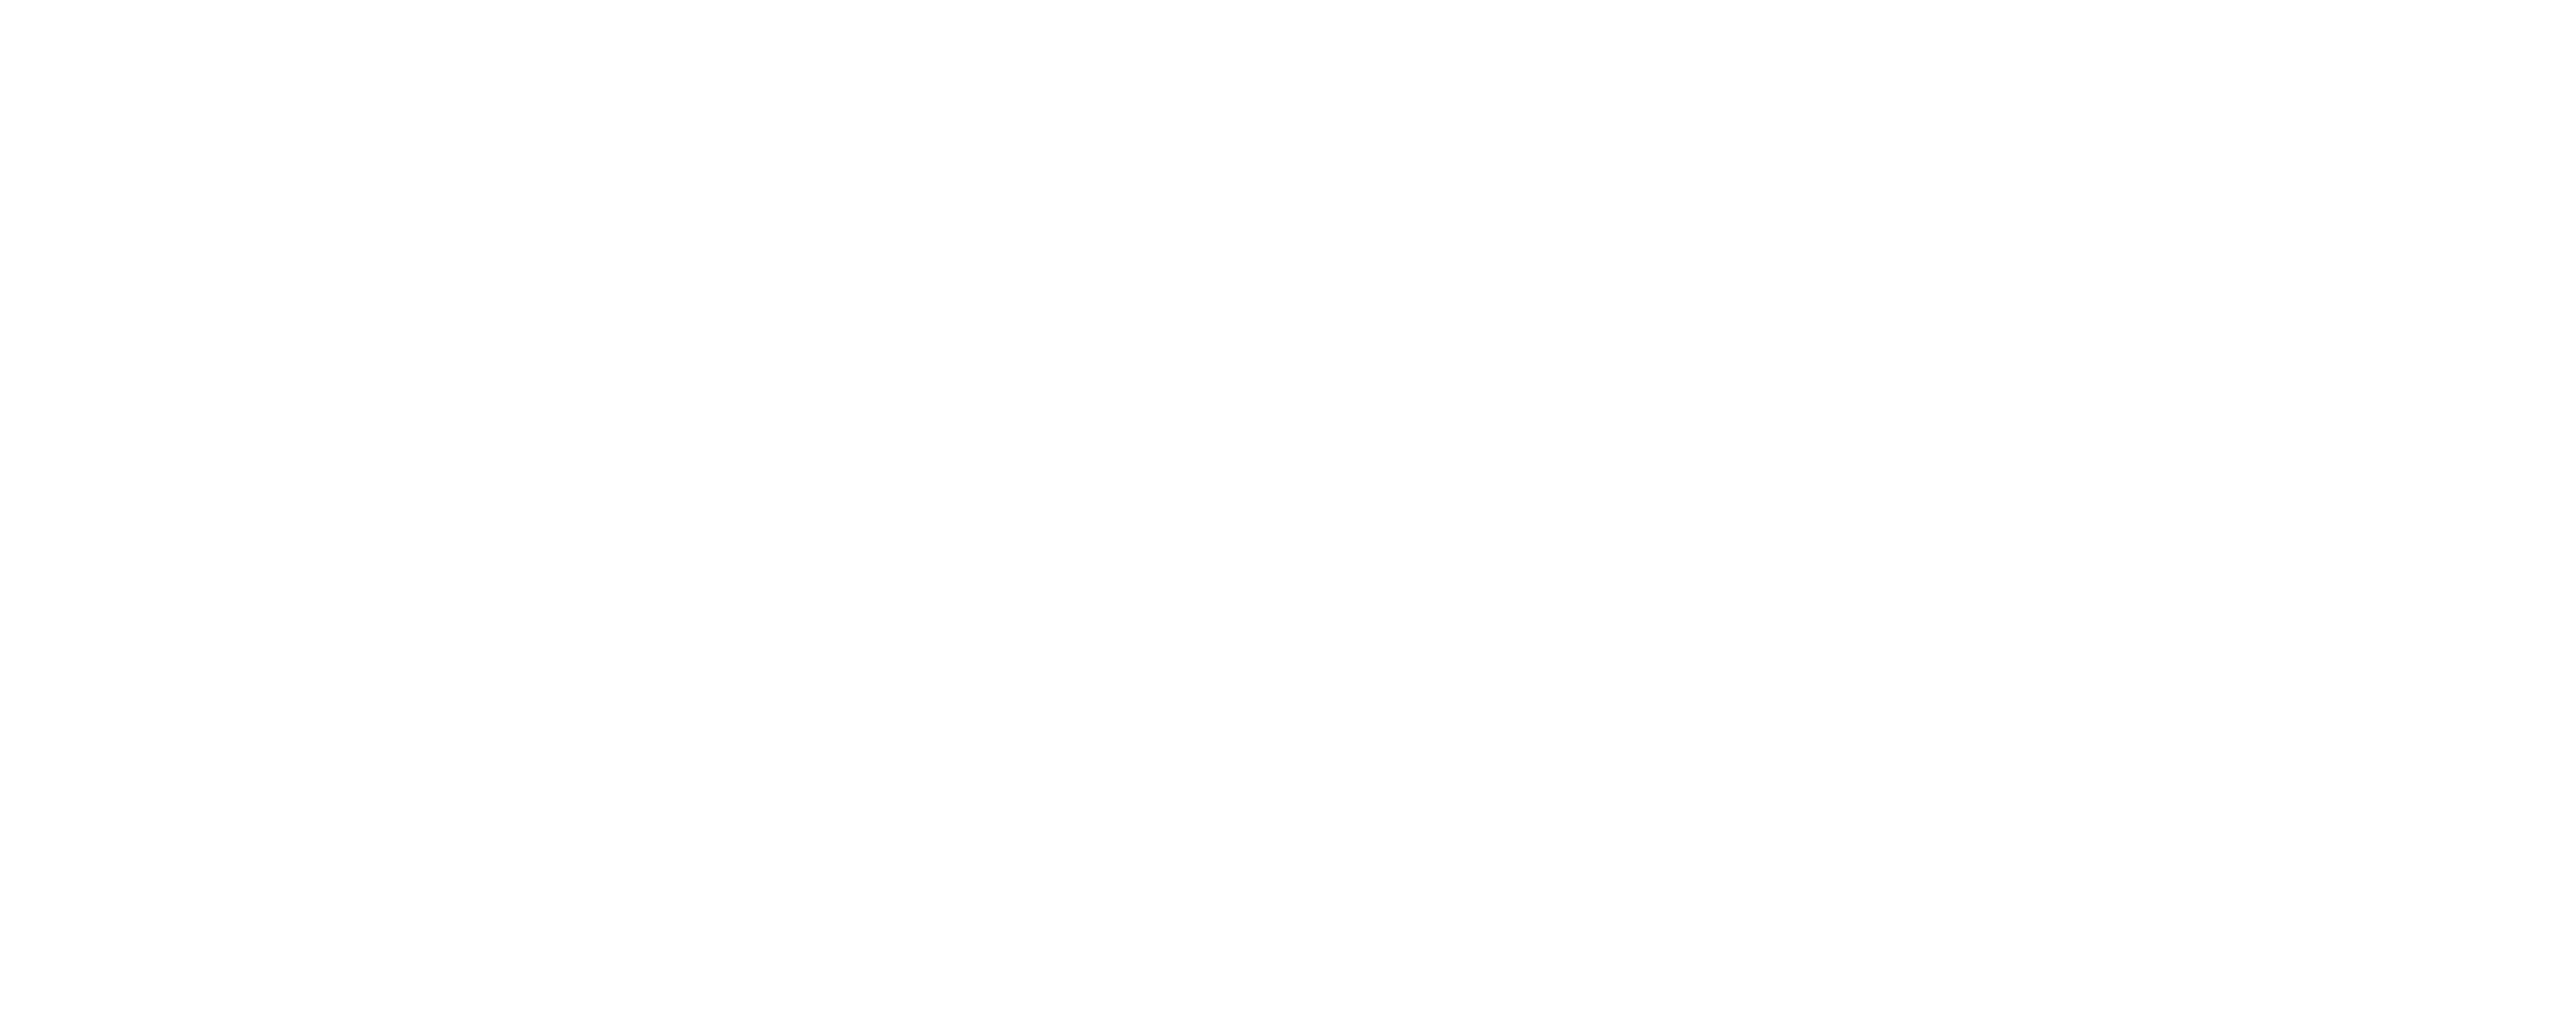 Freelancer Survey 2023